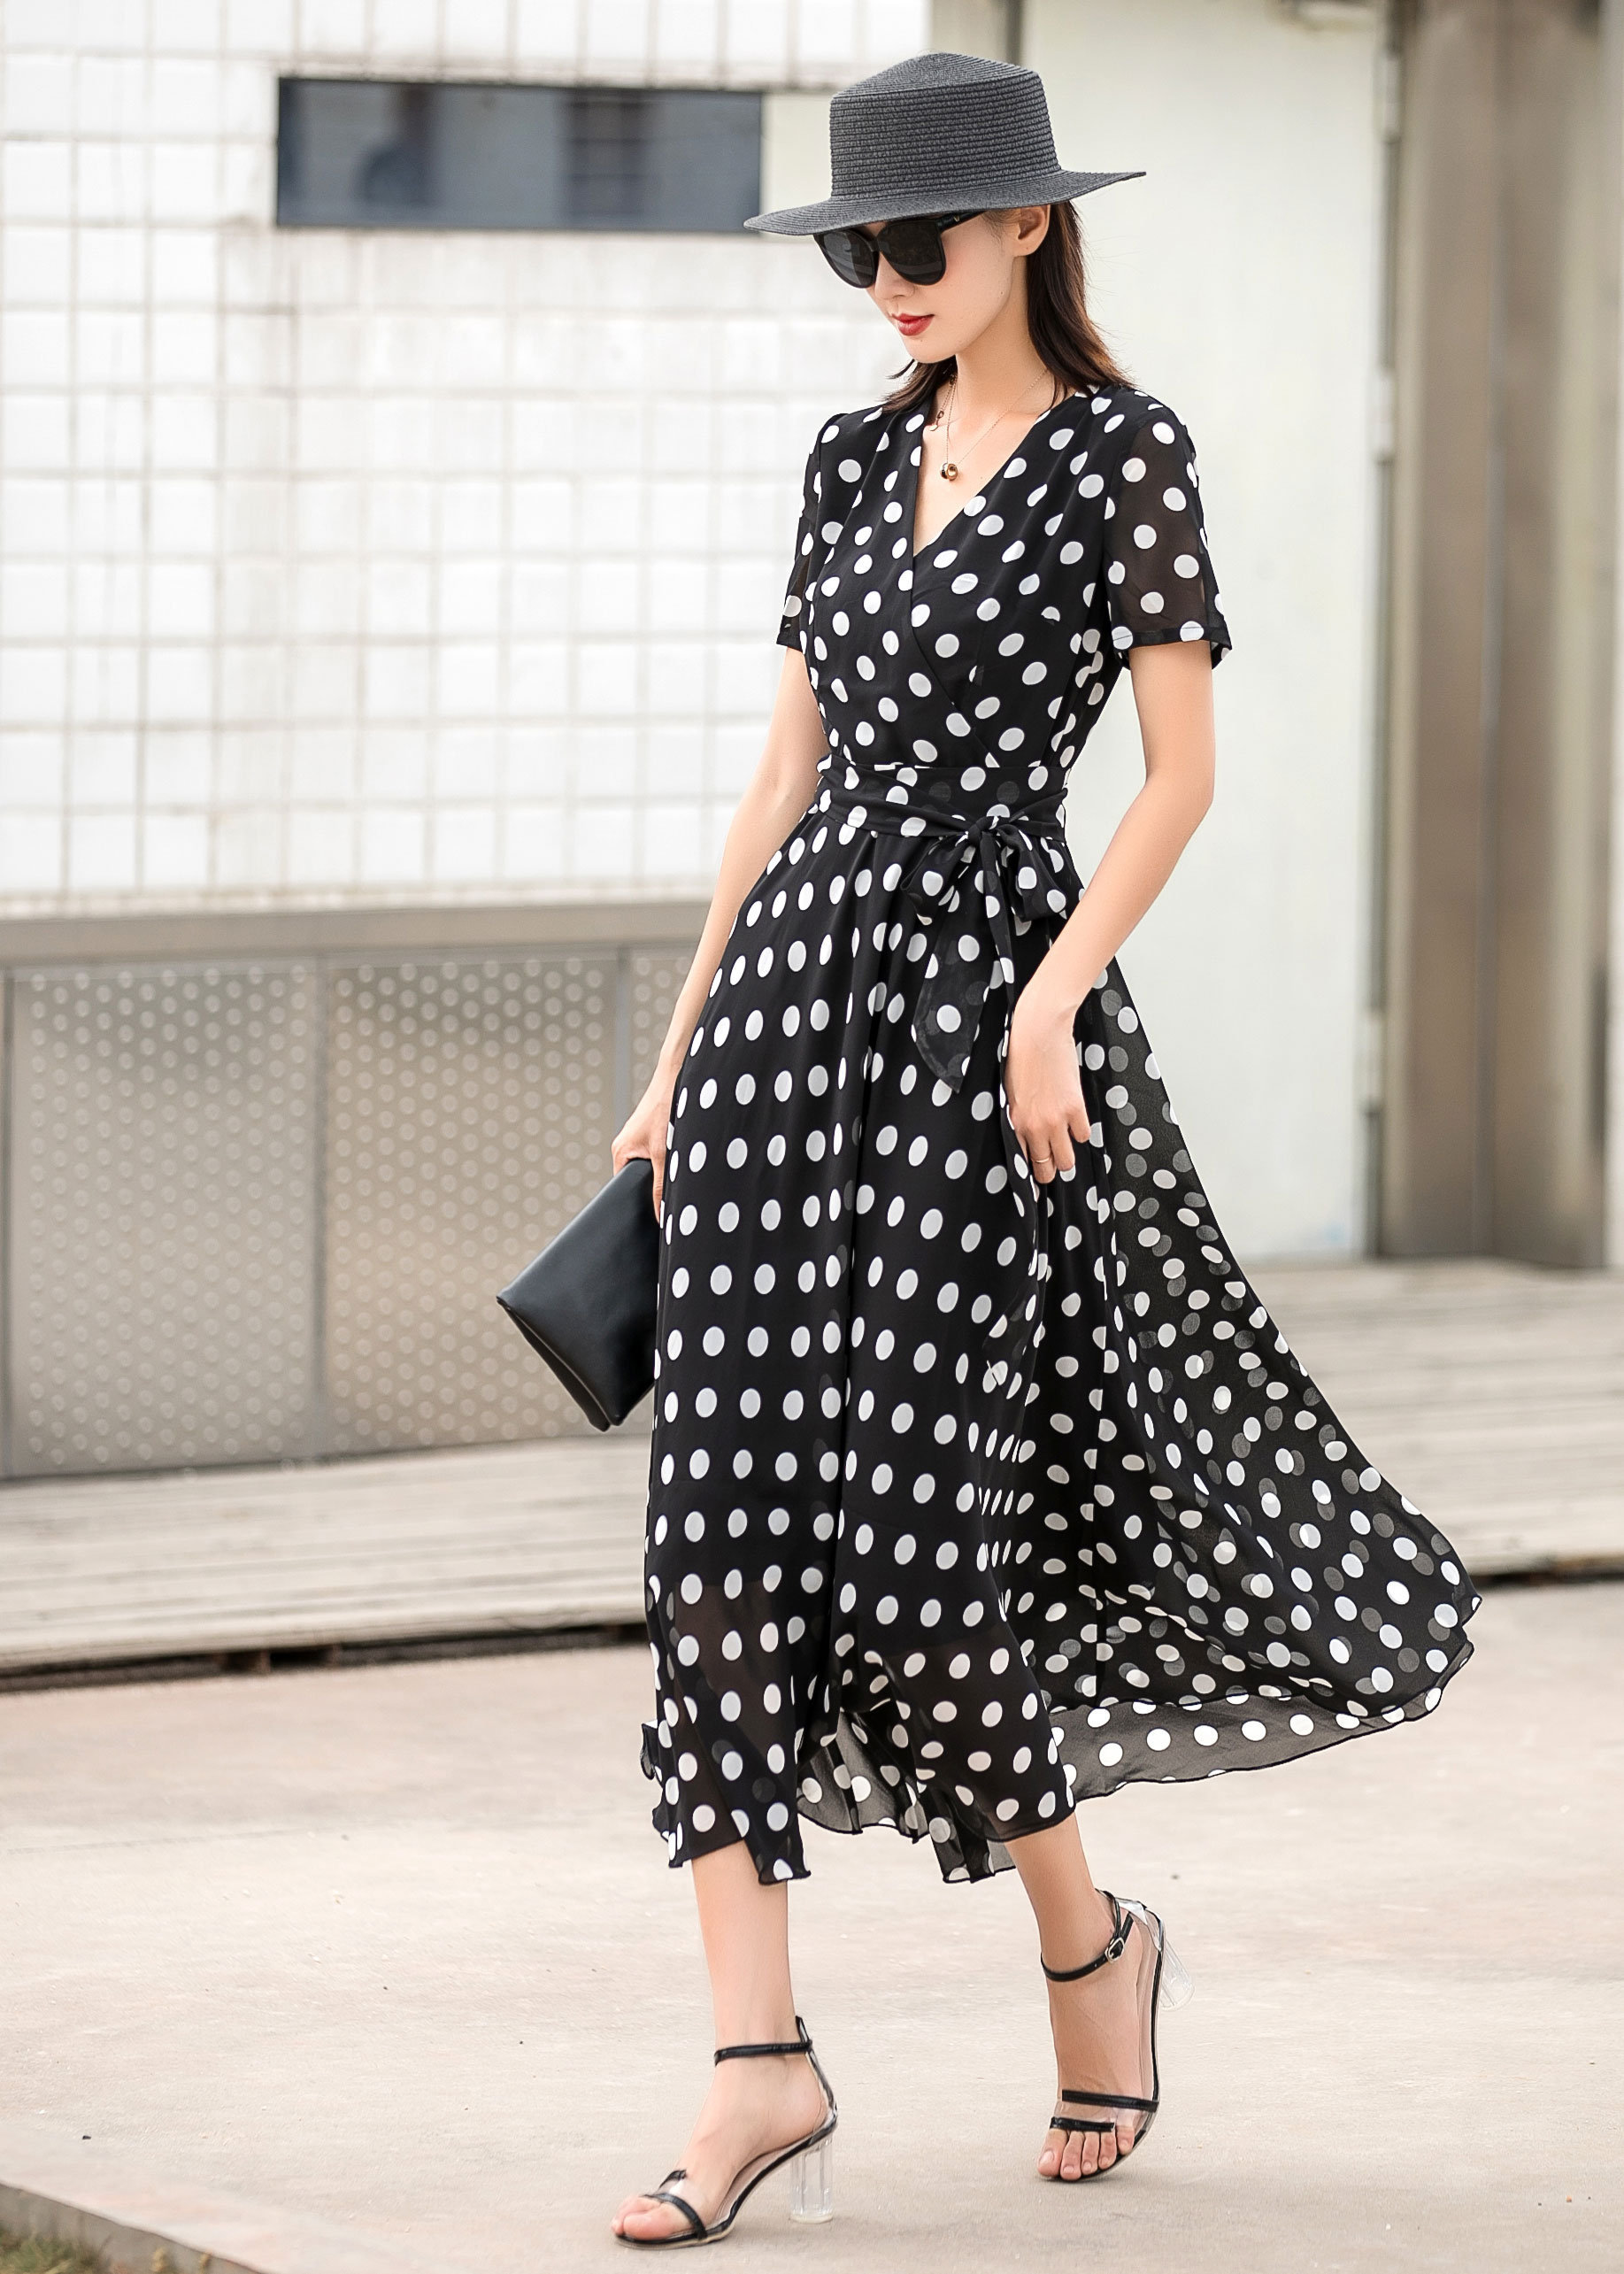 Zwarte polka dot chiffon jurk zomer jurk korte Etsy Nederland